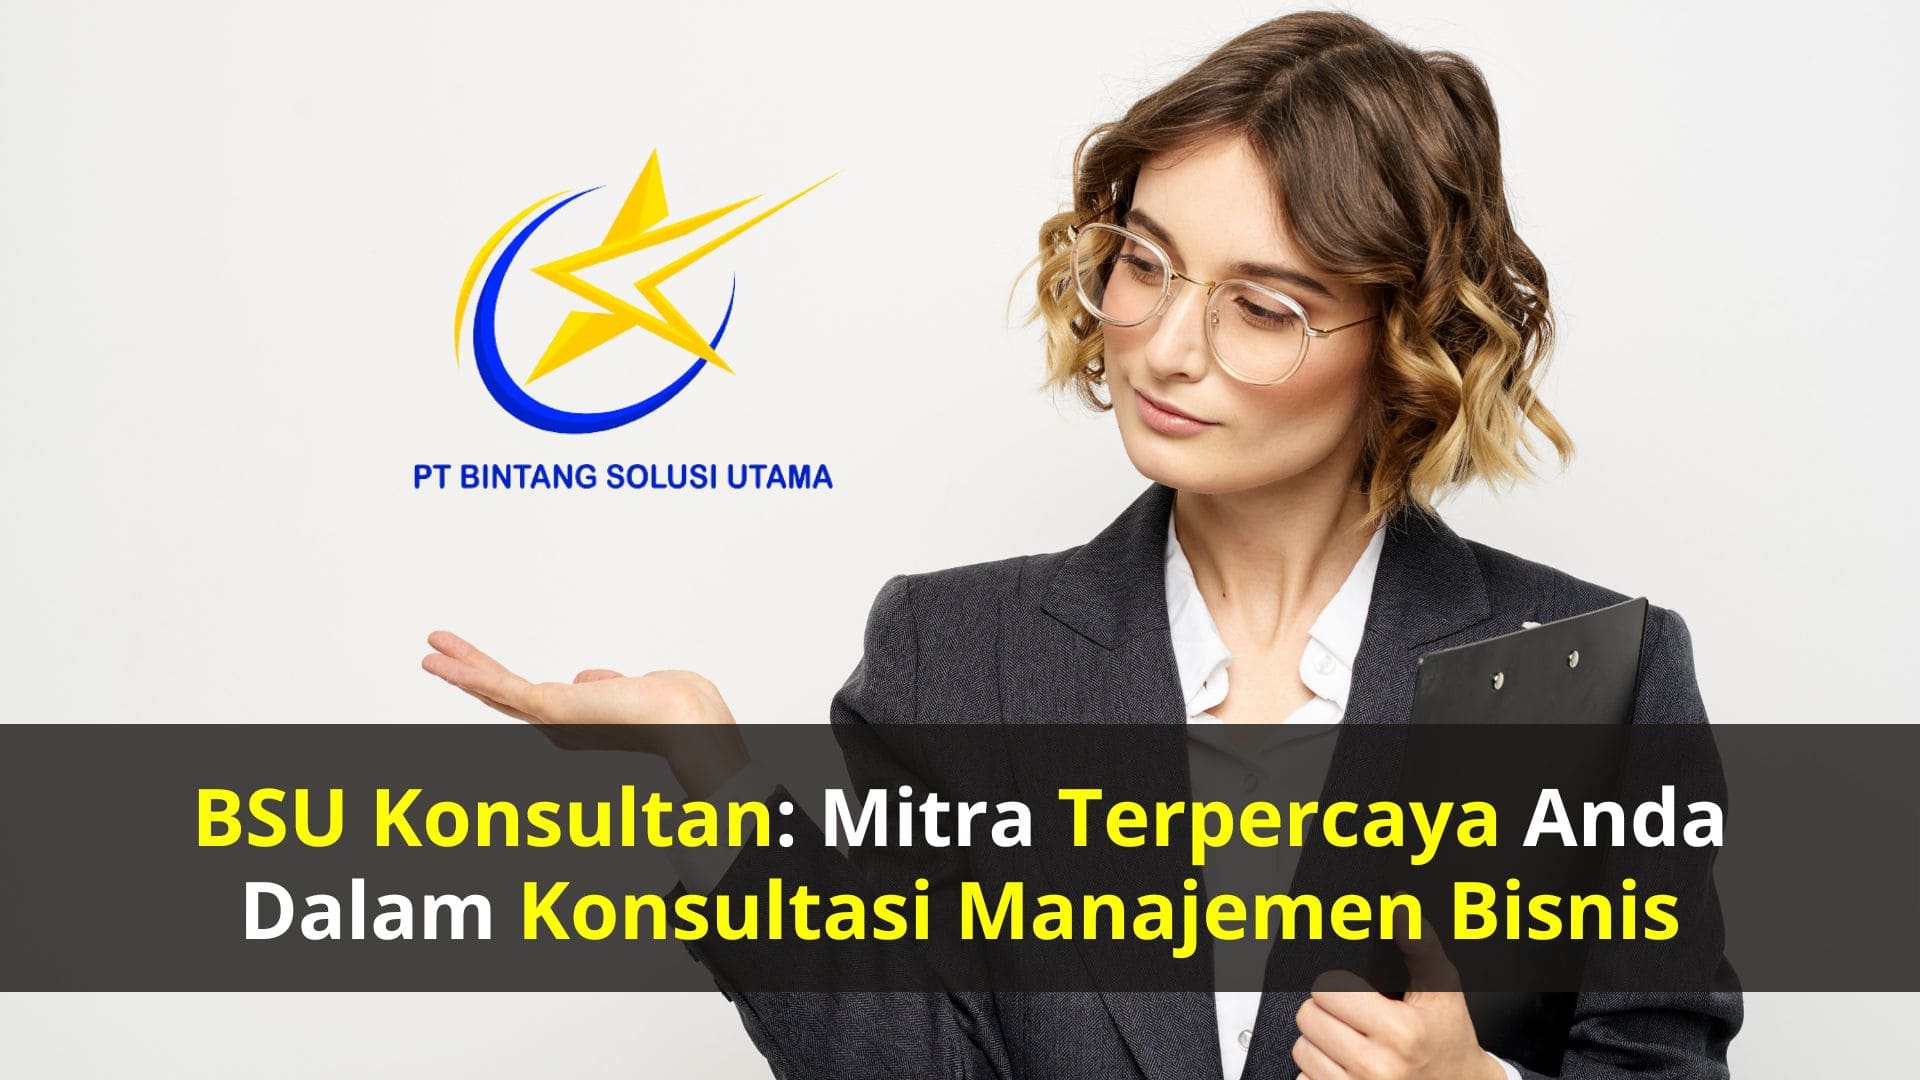 BSU Konsultan: Mitra Terpercaya Anda dalam Konsultasi Manajemen Bisnis